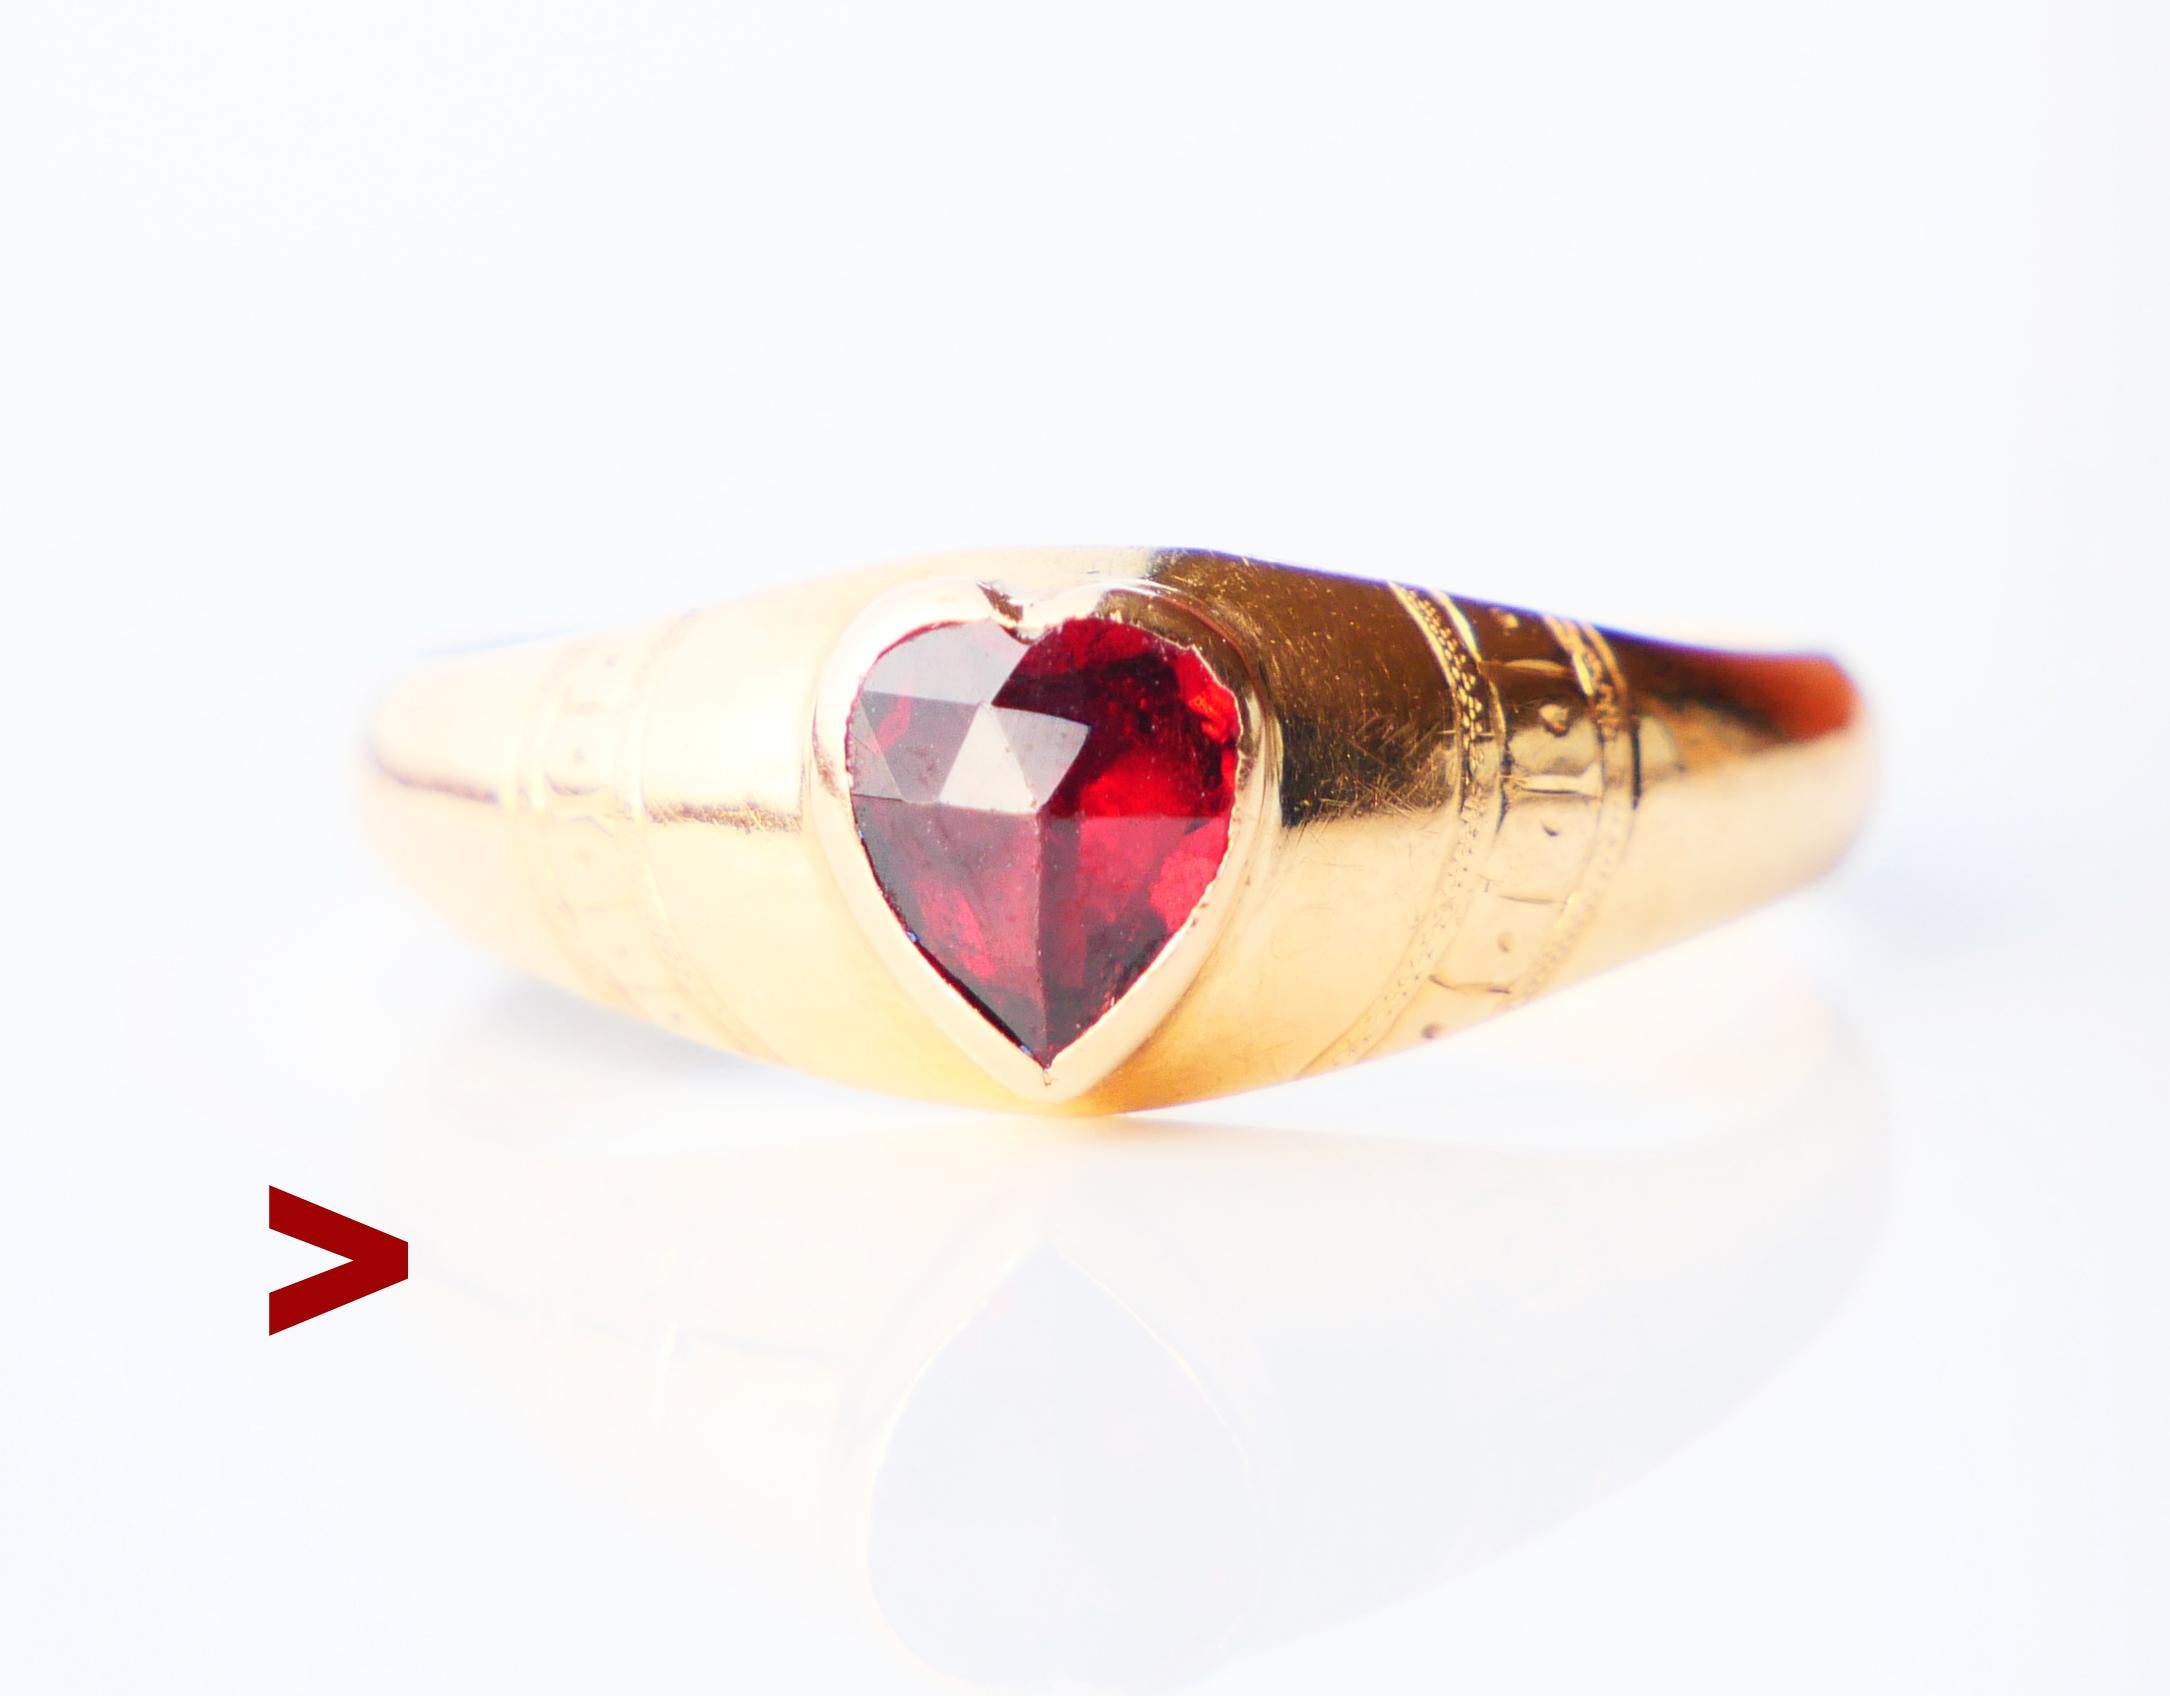 Ein Ring mit einem Band aus massivem 18-karätigem Orangegold mit eingravierten Schultern.
Herzförmiger roter Granat im Rosenschliff mit Lünette 5,5 mm x 5 mm / ca. 0,5 ct .

Handgefertigt in Schweden, gepunzt mit 18K, Hersteller ist GD&Co, Malmø,